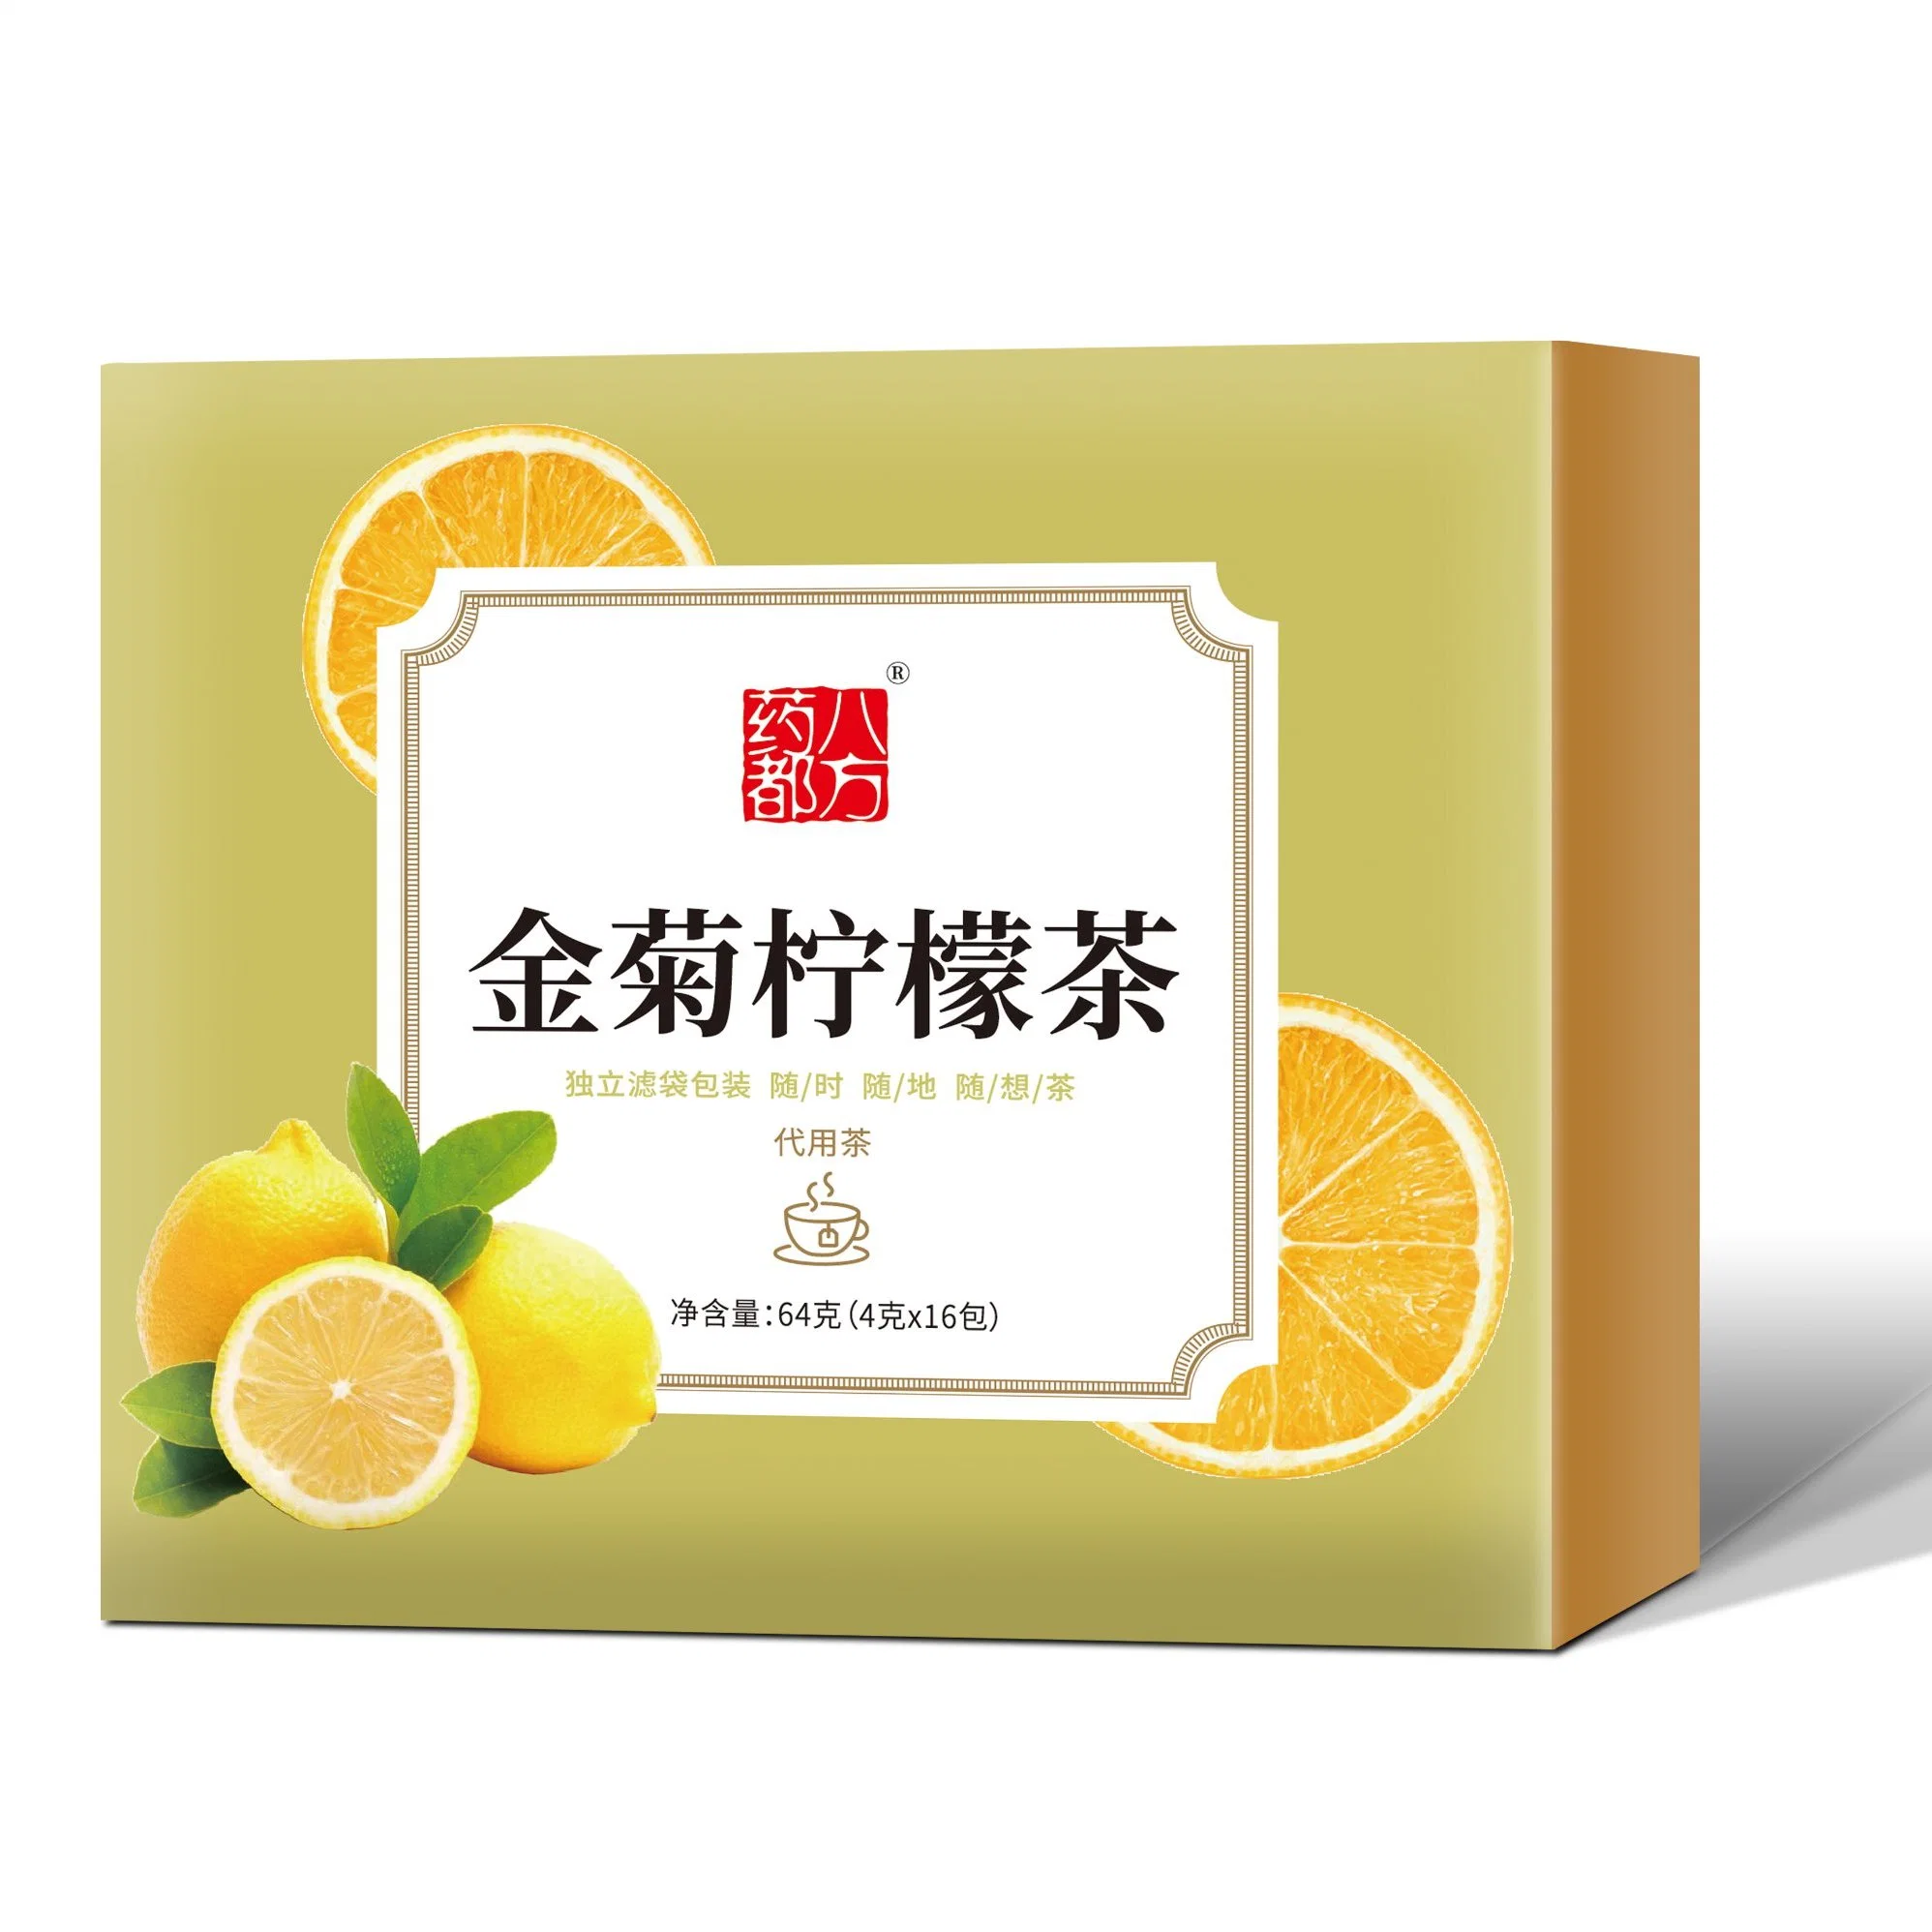 Оптовая цена Здравоохранение Продукты питания Сухие Лимон фруктовый чай